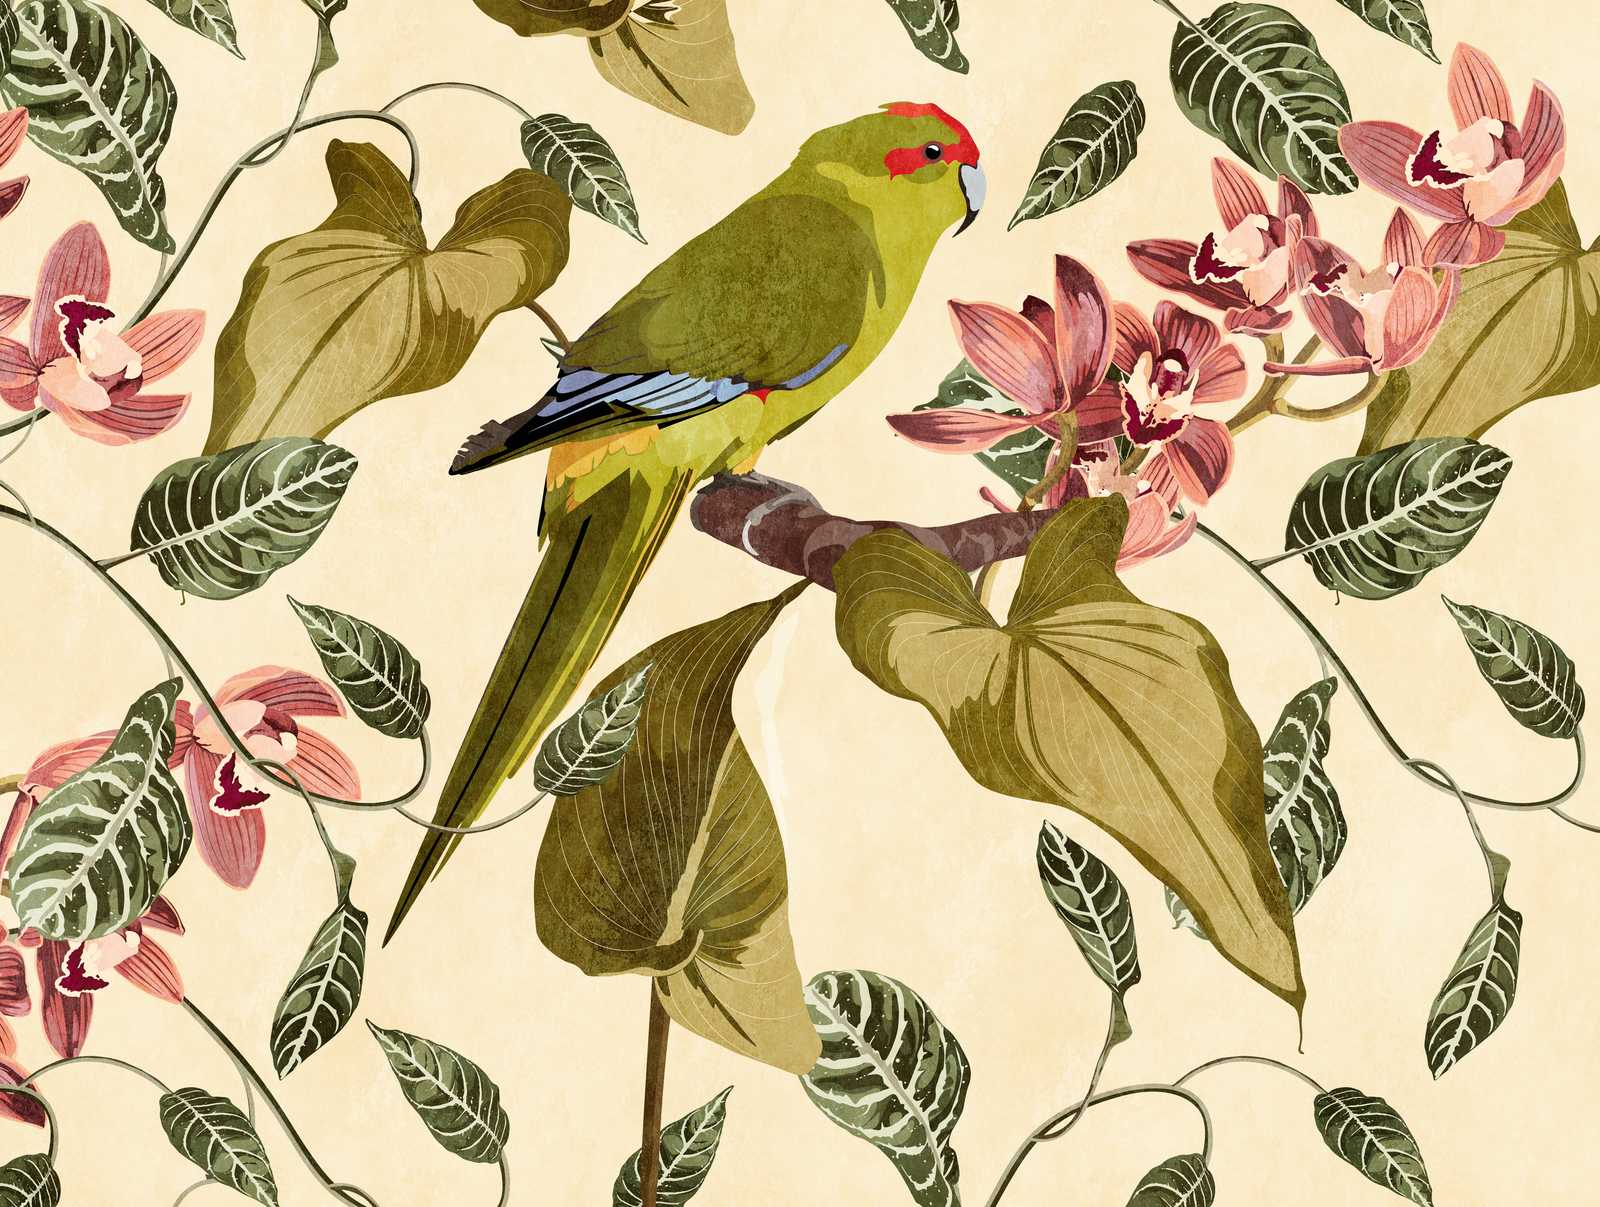             Carte da parati novità - Carta da parati motivo pappagallo e orchidee stampa d'arte
        